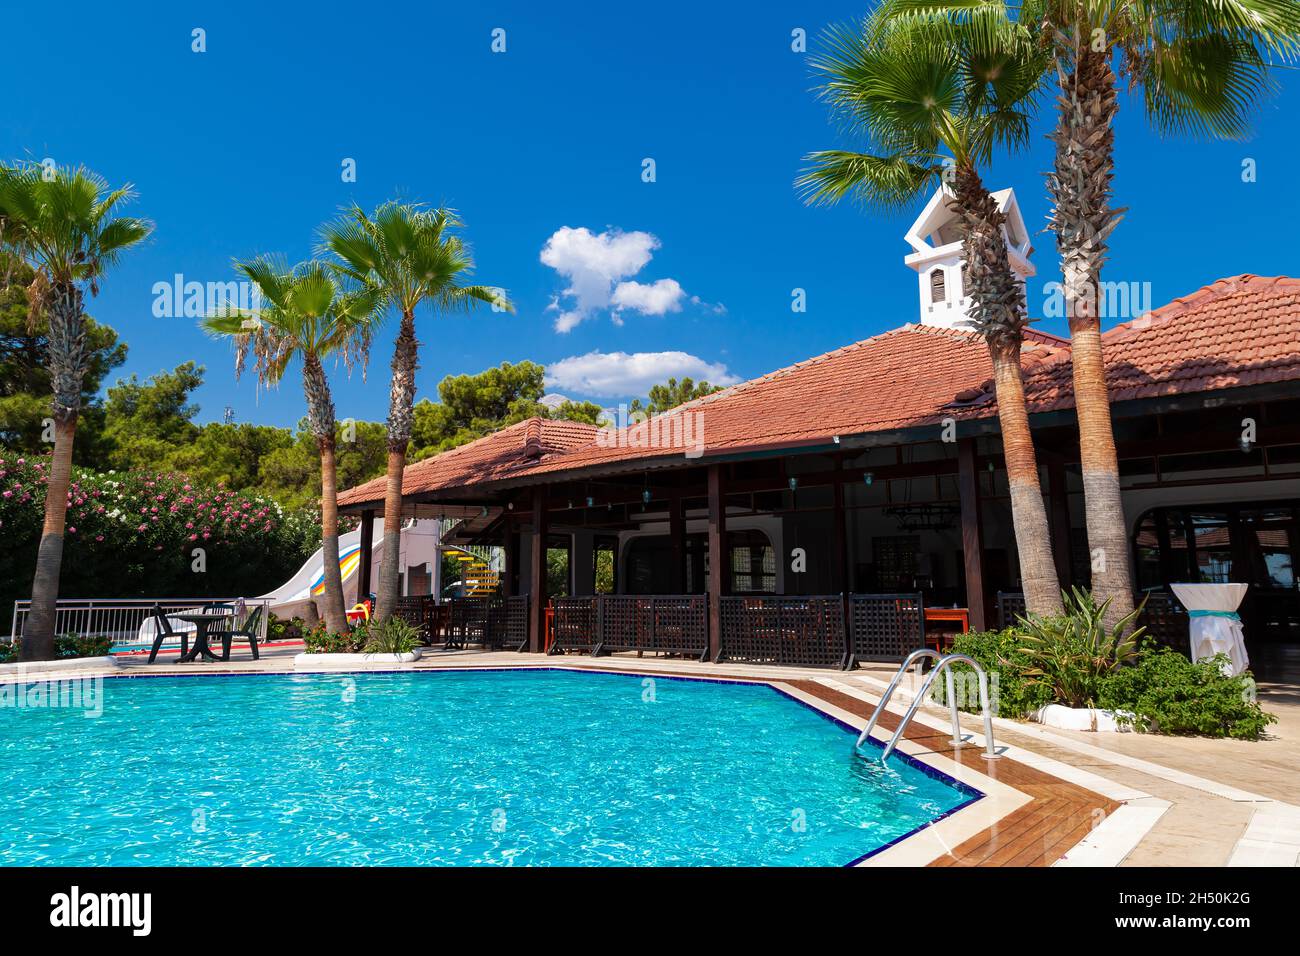 Hotel mit Swimmingpool, Palmen und Pinien. Touristen ruhen sich auf Sonnenliegen unter Sonnenschirmen aus. Reisen in die Pandemie. Stockfoto